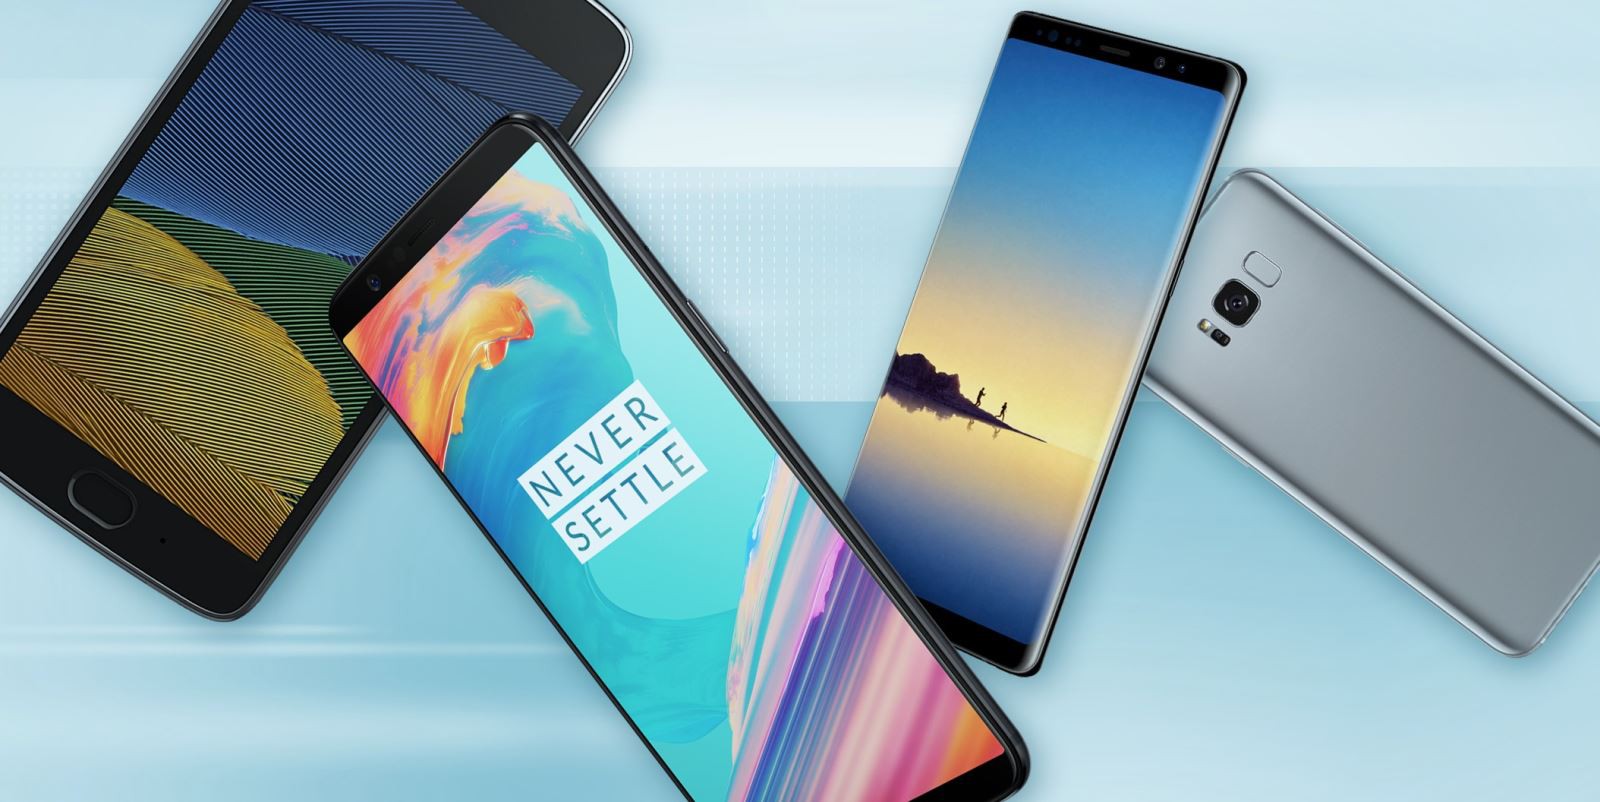 Đây là những smartphone Android tốt nhất hiện nay, bạn chọn chiếc nào?